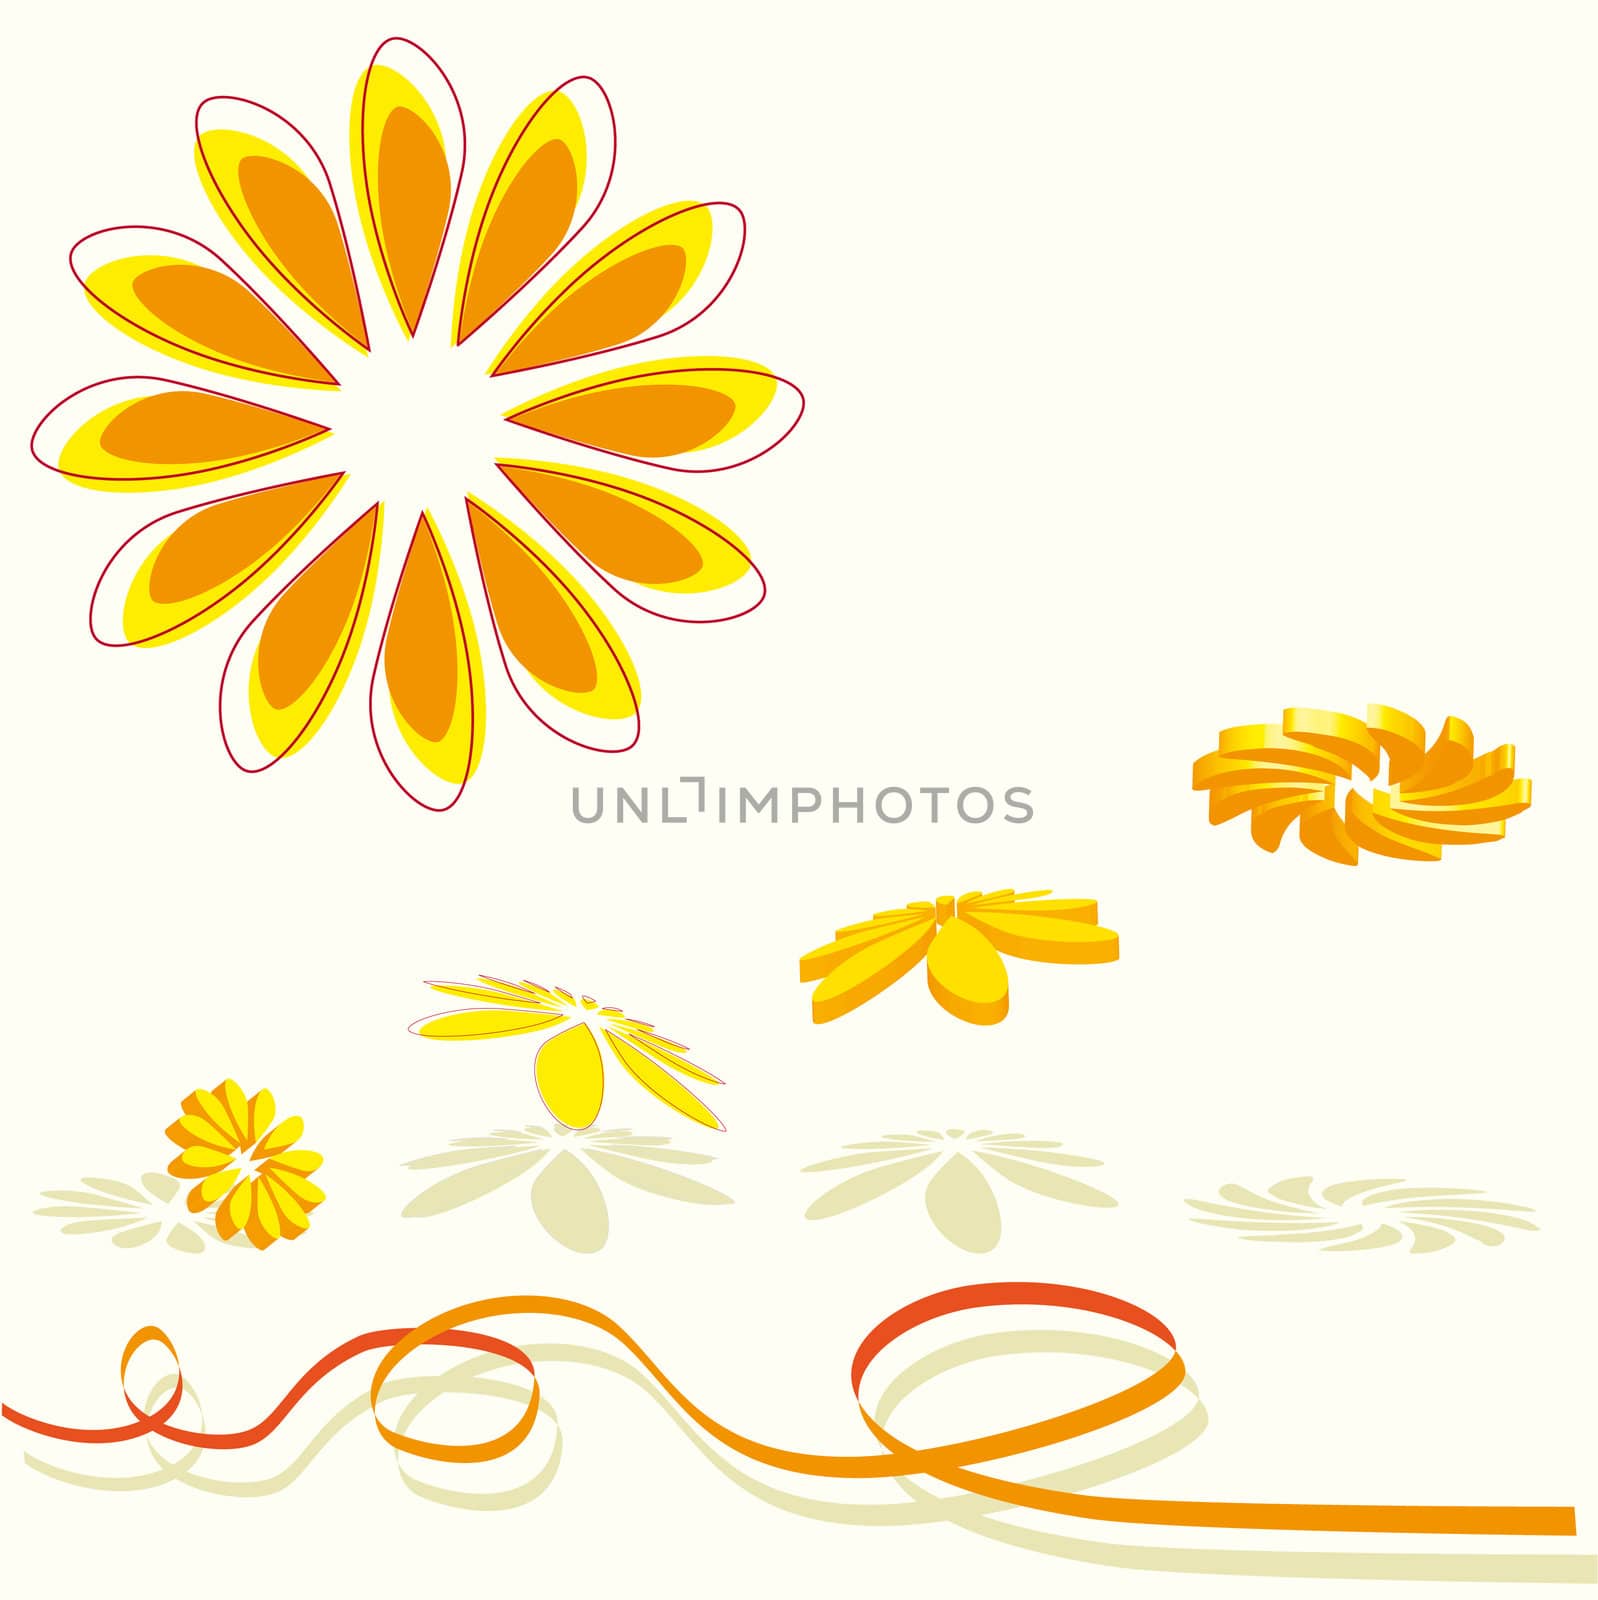 3D flying flowers in orange by karinclaus